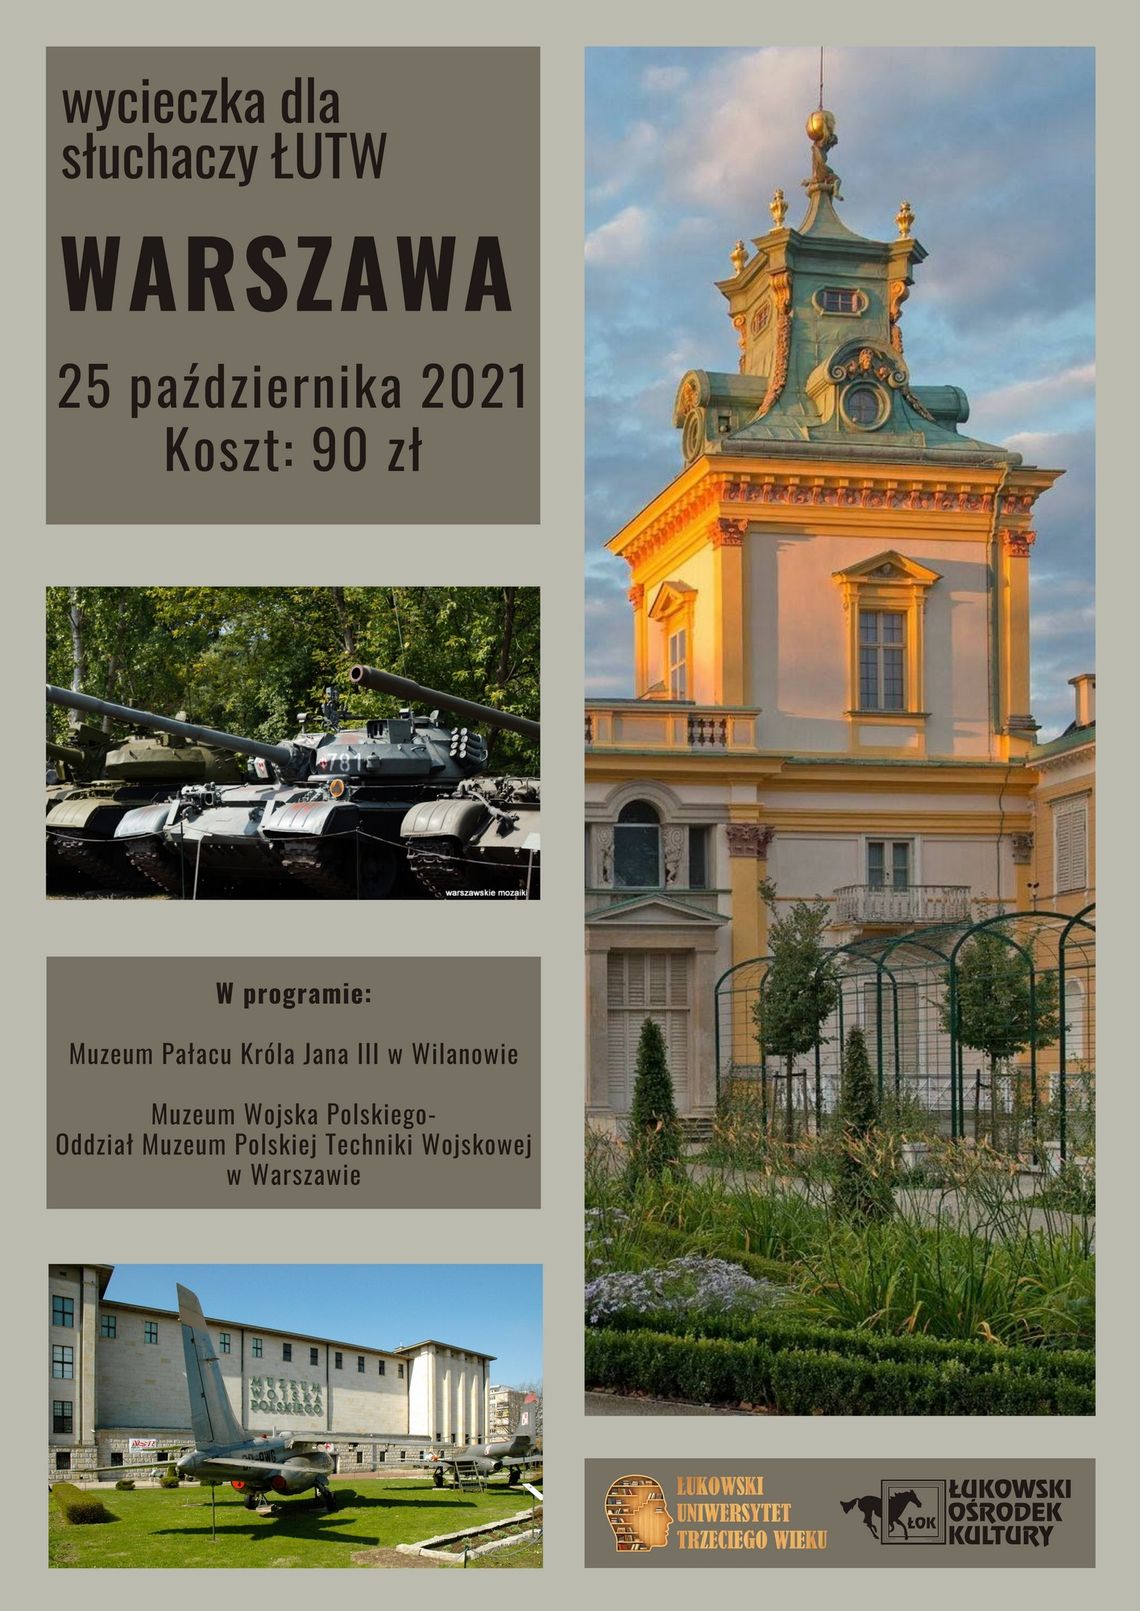 Wycieczka słuchaczy ŁUTW: Warszawa